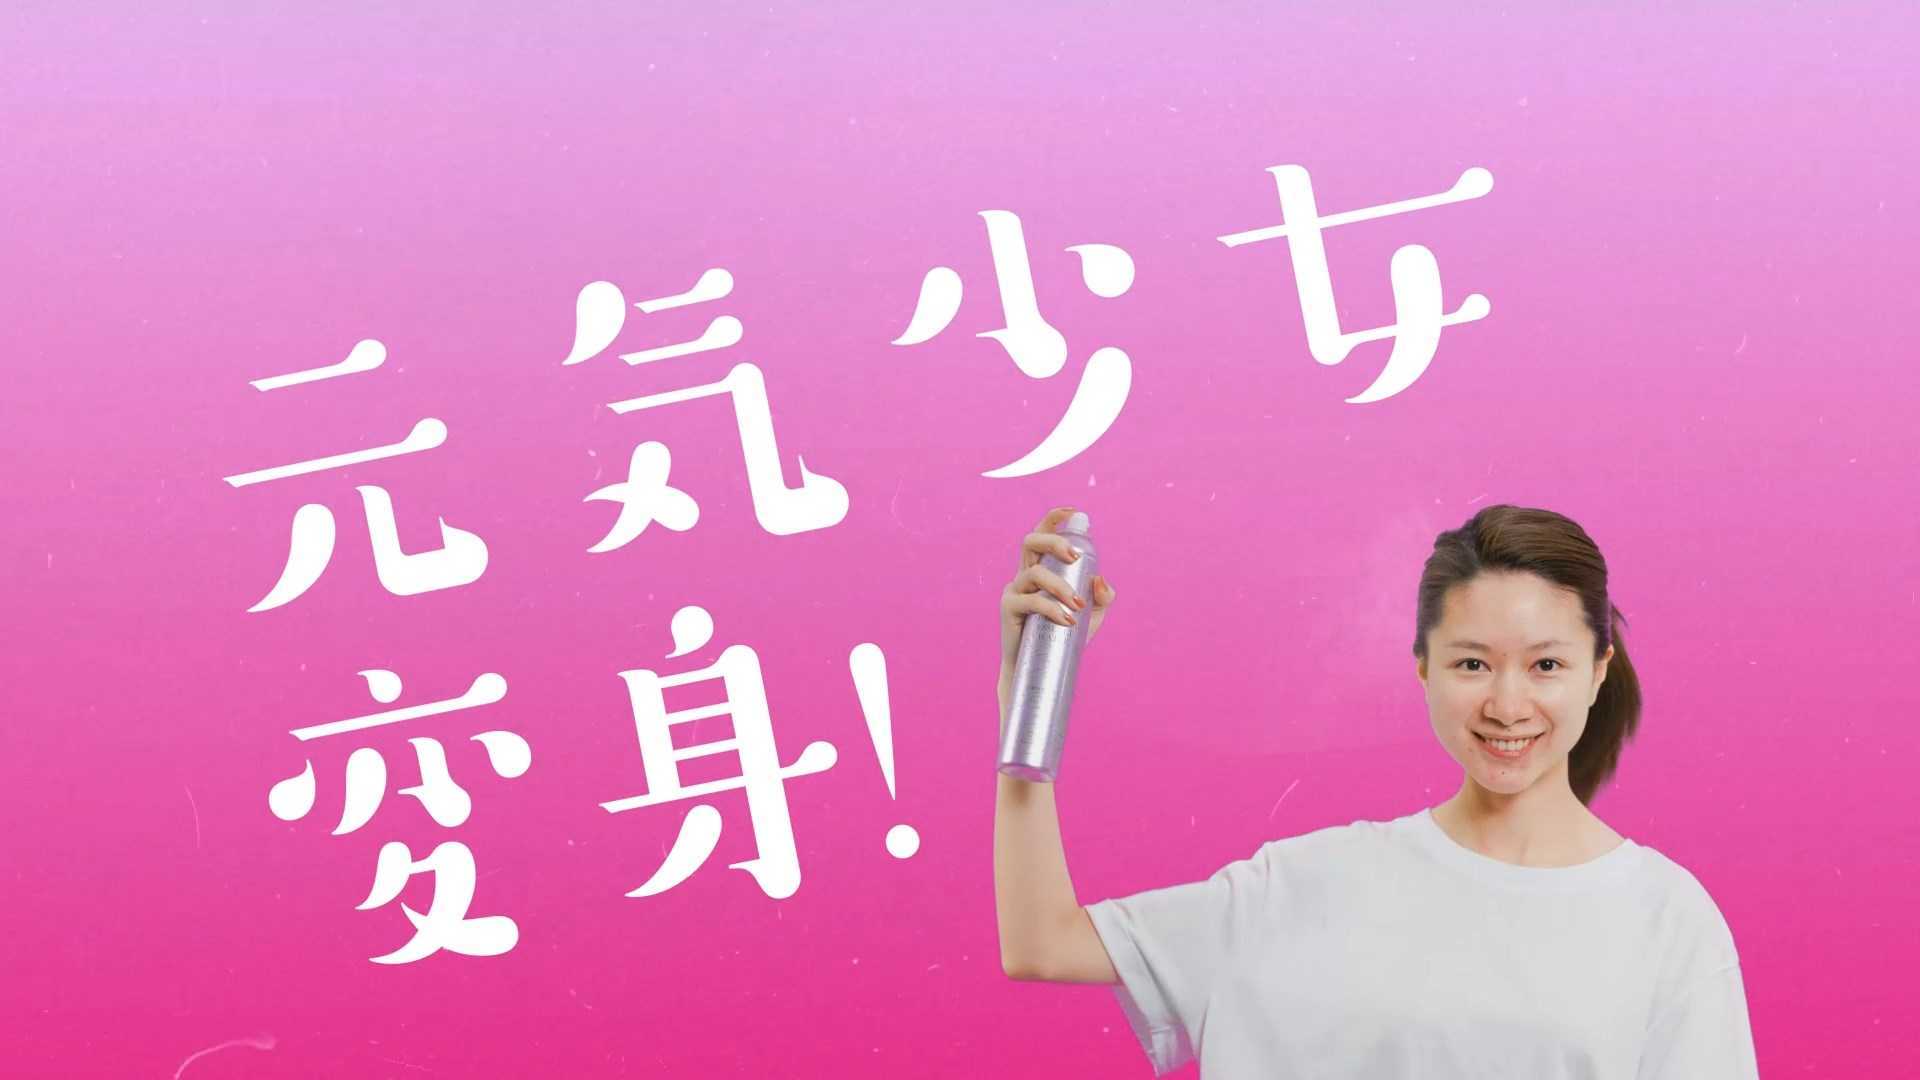 日本护肤品牌喷雾产品宣传片 绿幕MG动画合成